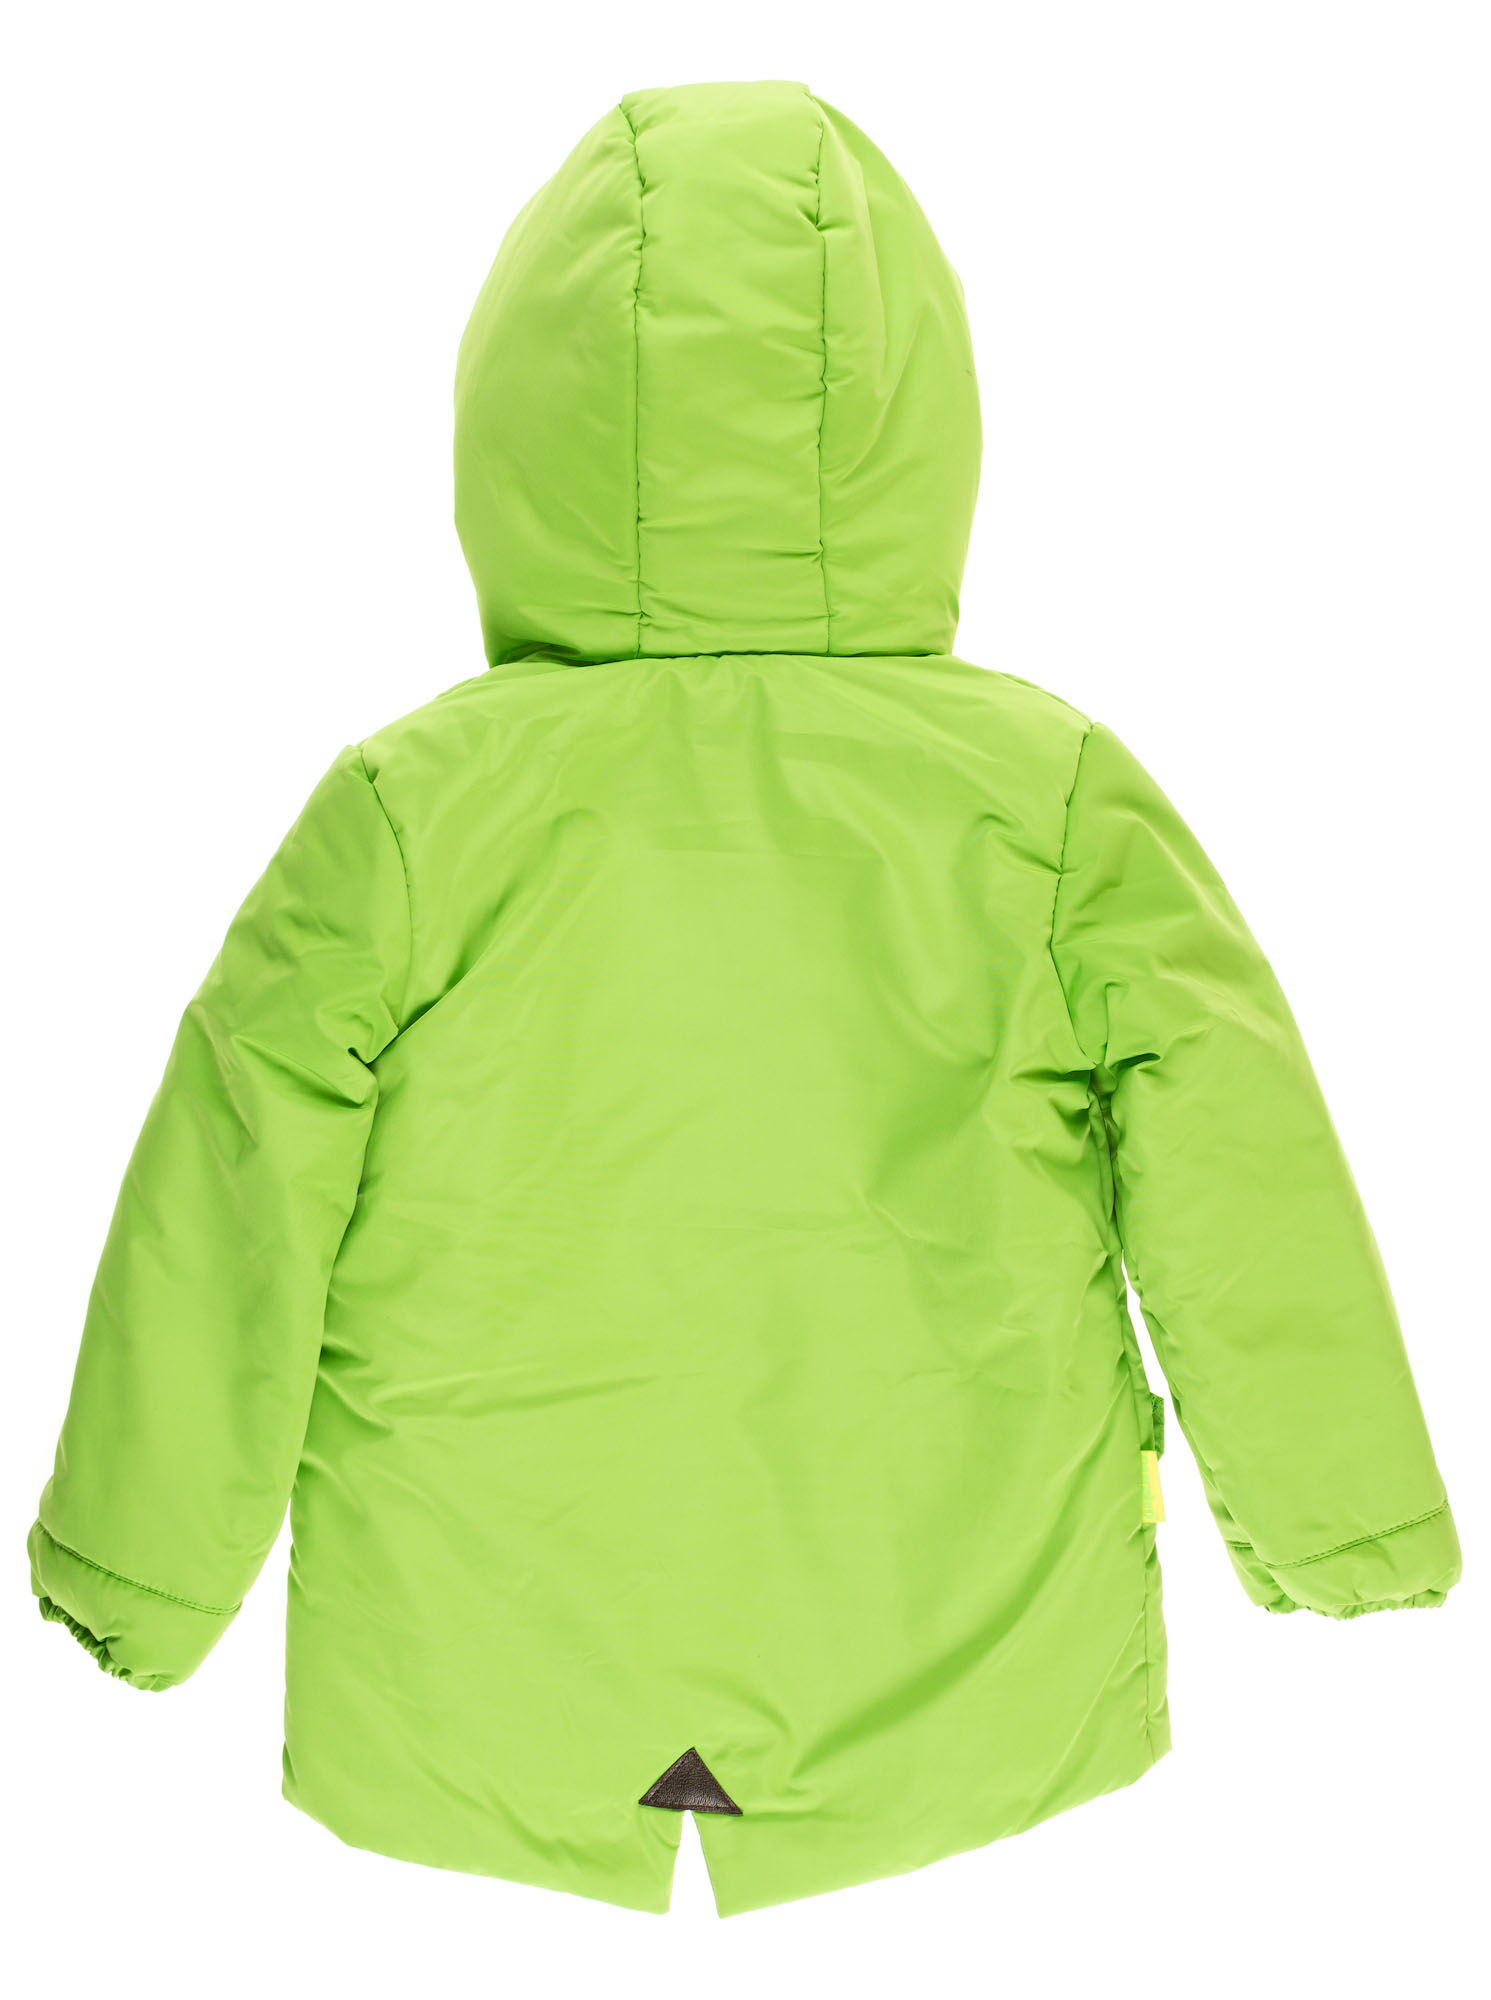 Куртка для мальчика ОДЯГАЙКО салатовая 22055 - размеры